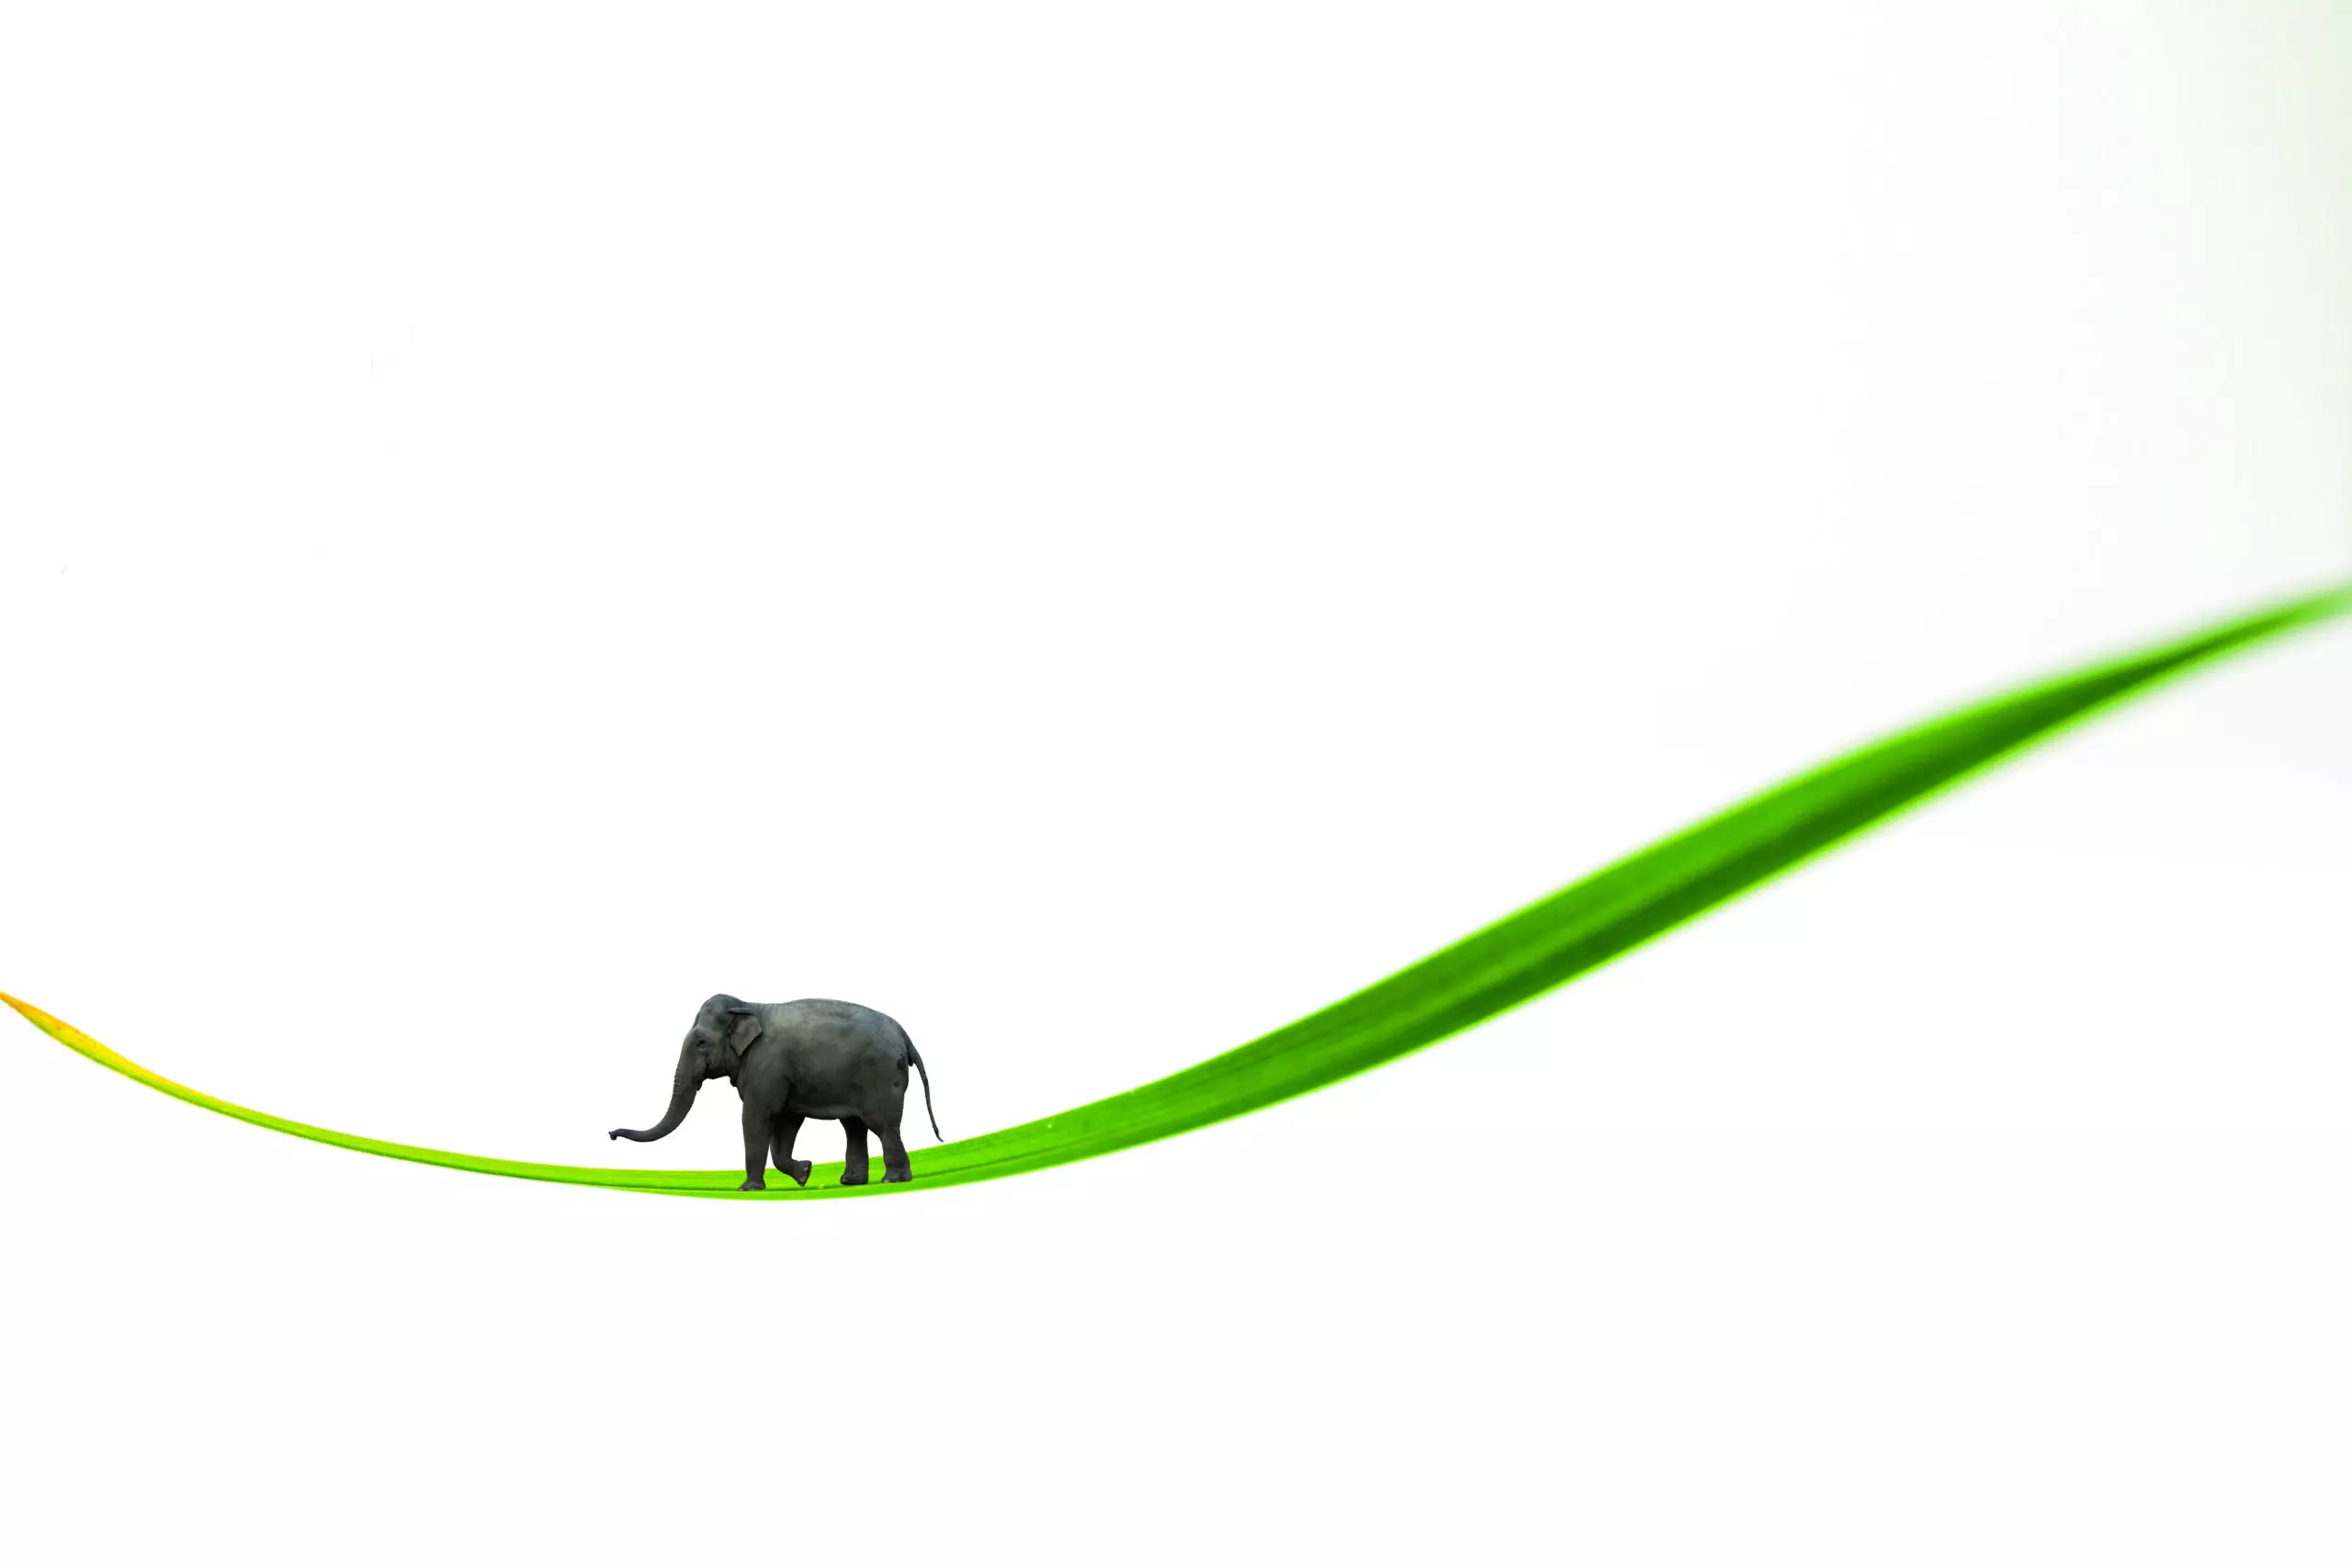 Wandbild (4378) Green Elefant präsentiert: Kreatives,Sonstiges Kreatives